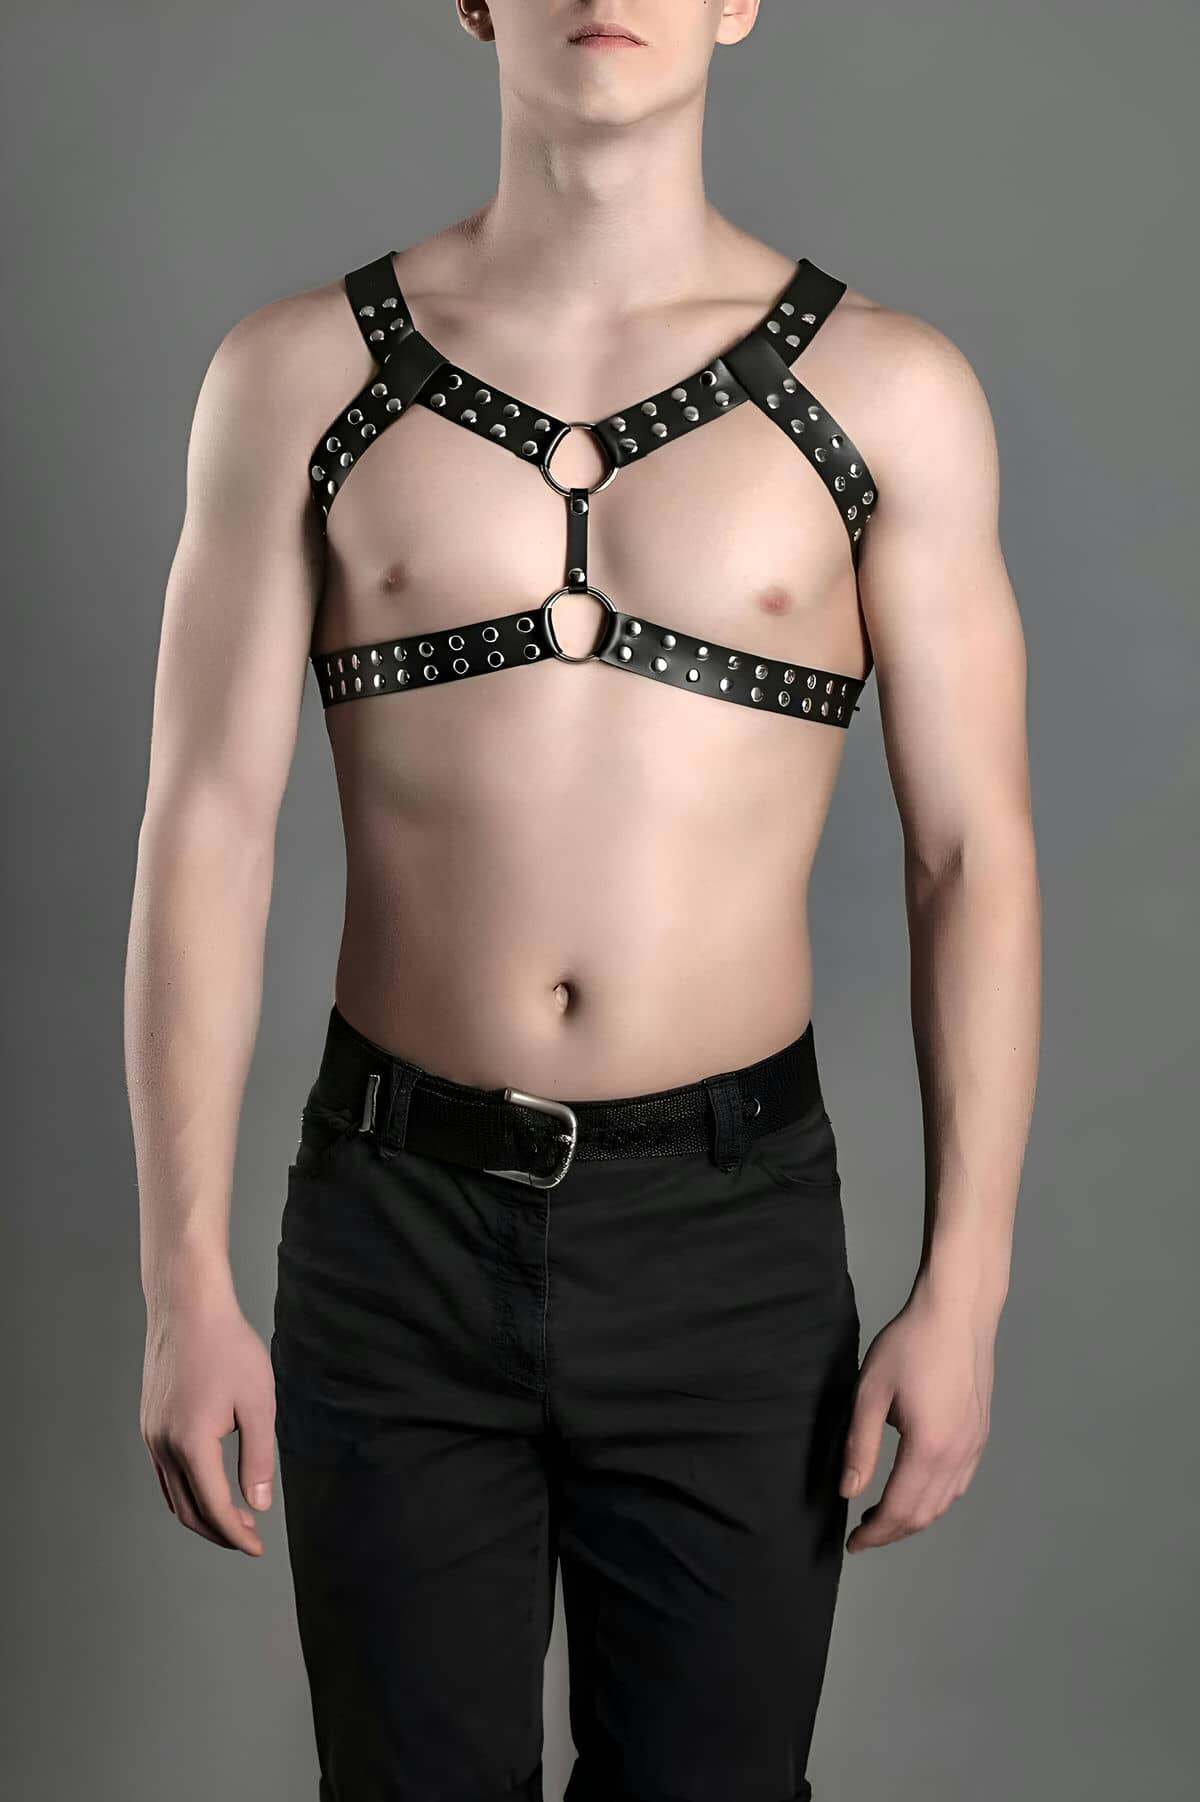 Lisinya41 Erkek Fantazi Giyim, Deri Erkek Göğüs Kemeri, Şık Deri Aksesuar - Ürün Rengi:Siyah